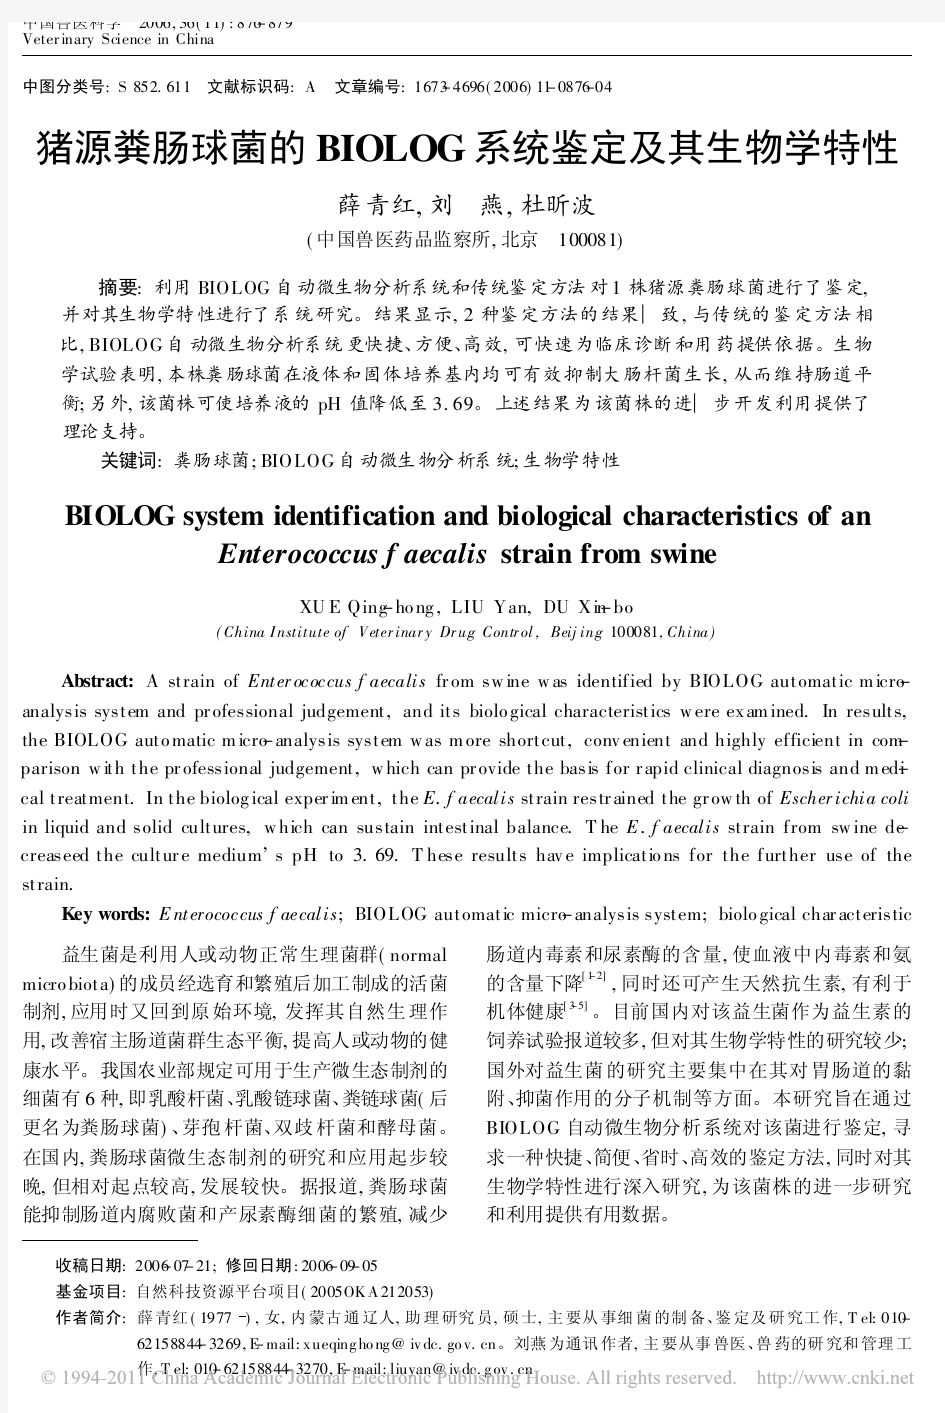 猪源粪肠球菌的BIOLOG系统鉴定及其生物学特性_薛青红(1)